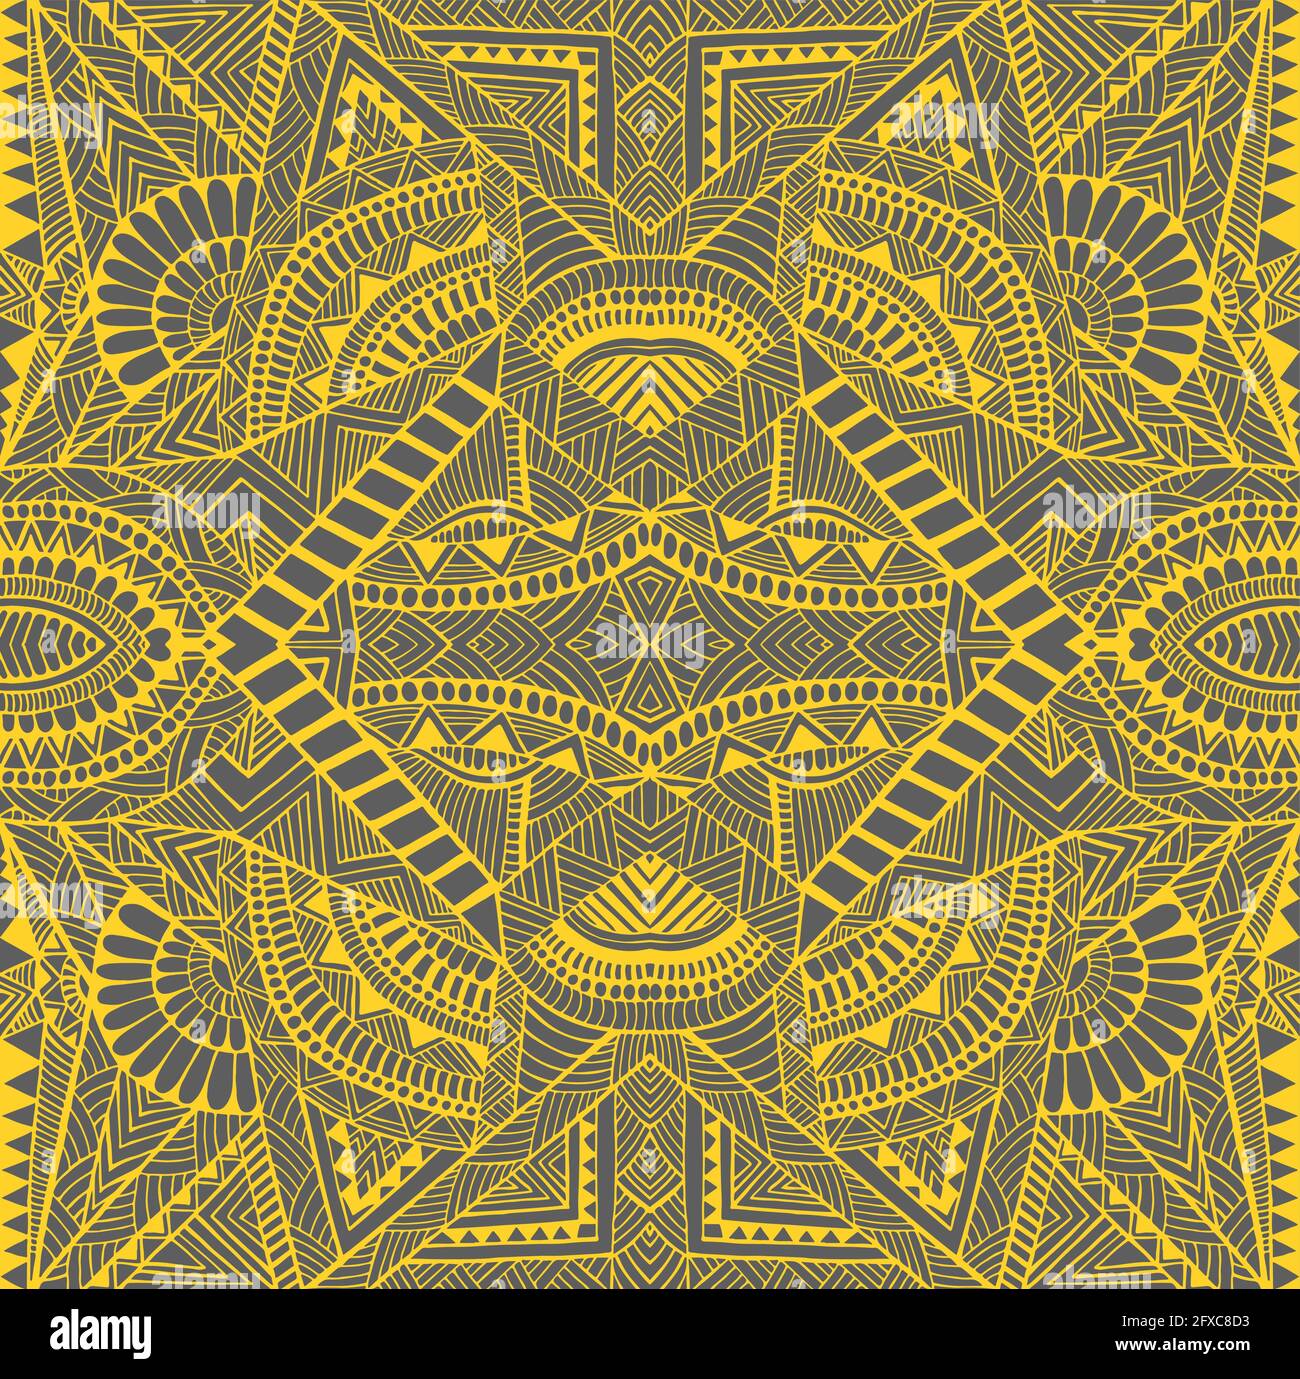 Tribal kaleidoscope psychedelic geometric mandala background, yellow  outline color, isolated on grey Stock Vector Image & Art - Alamy